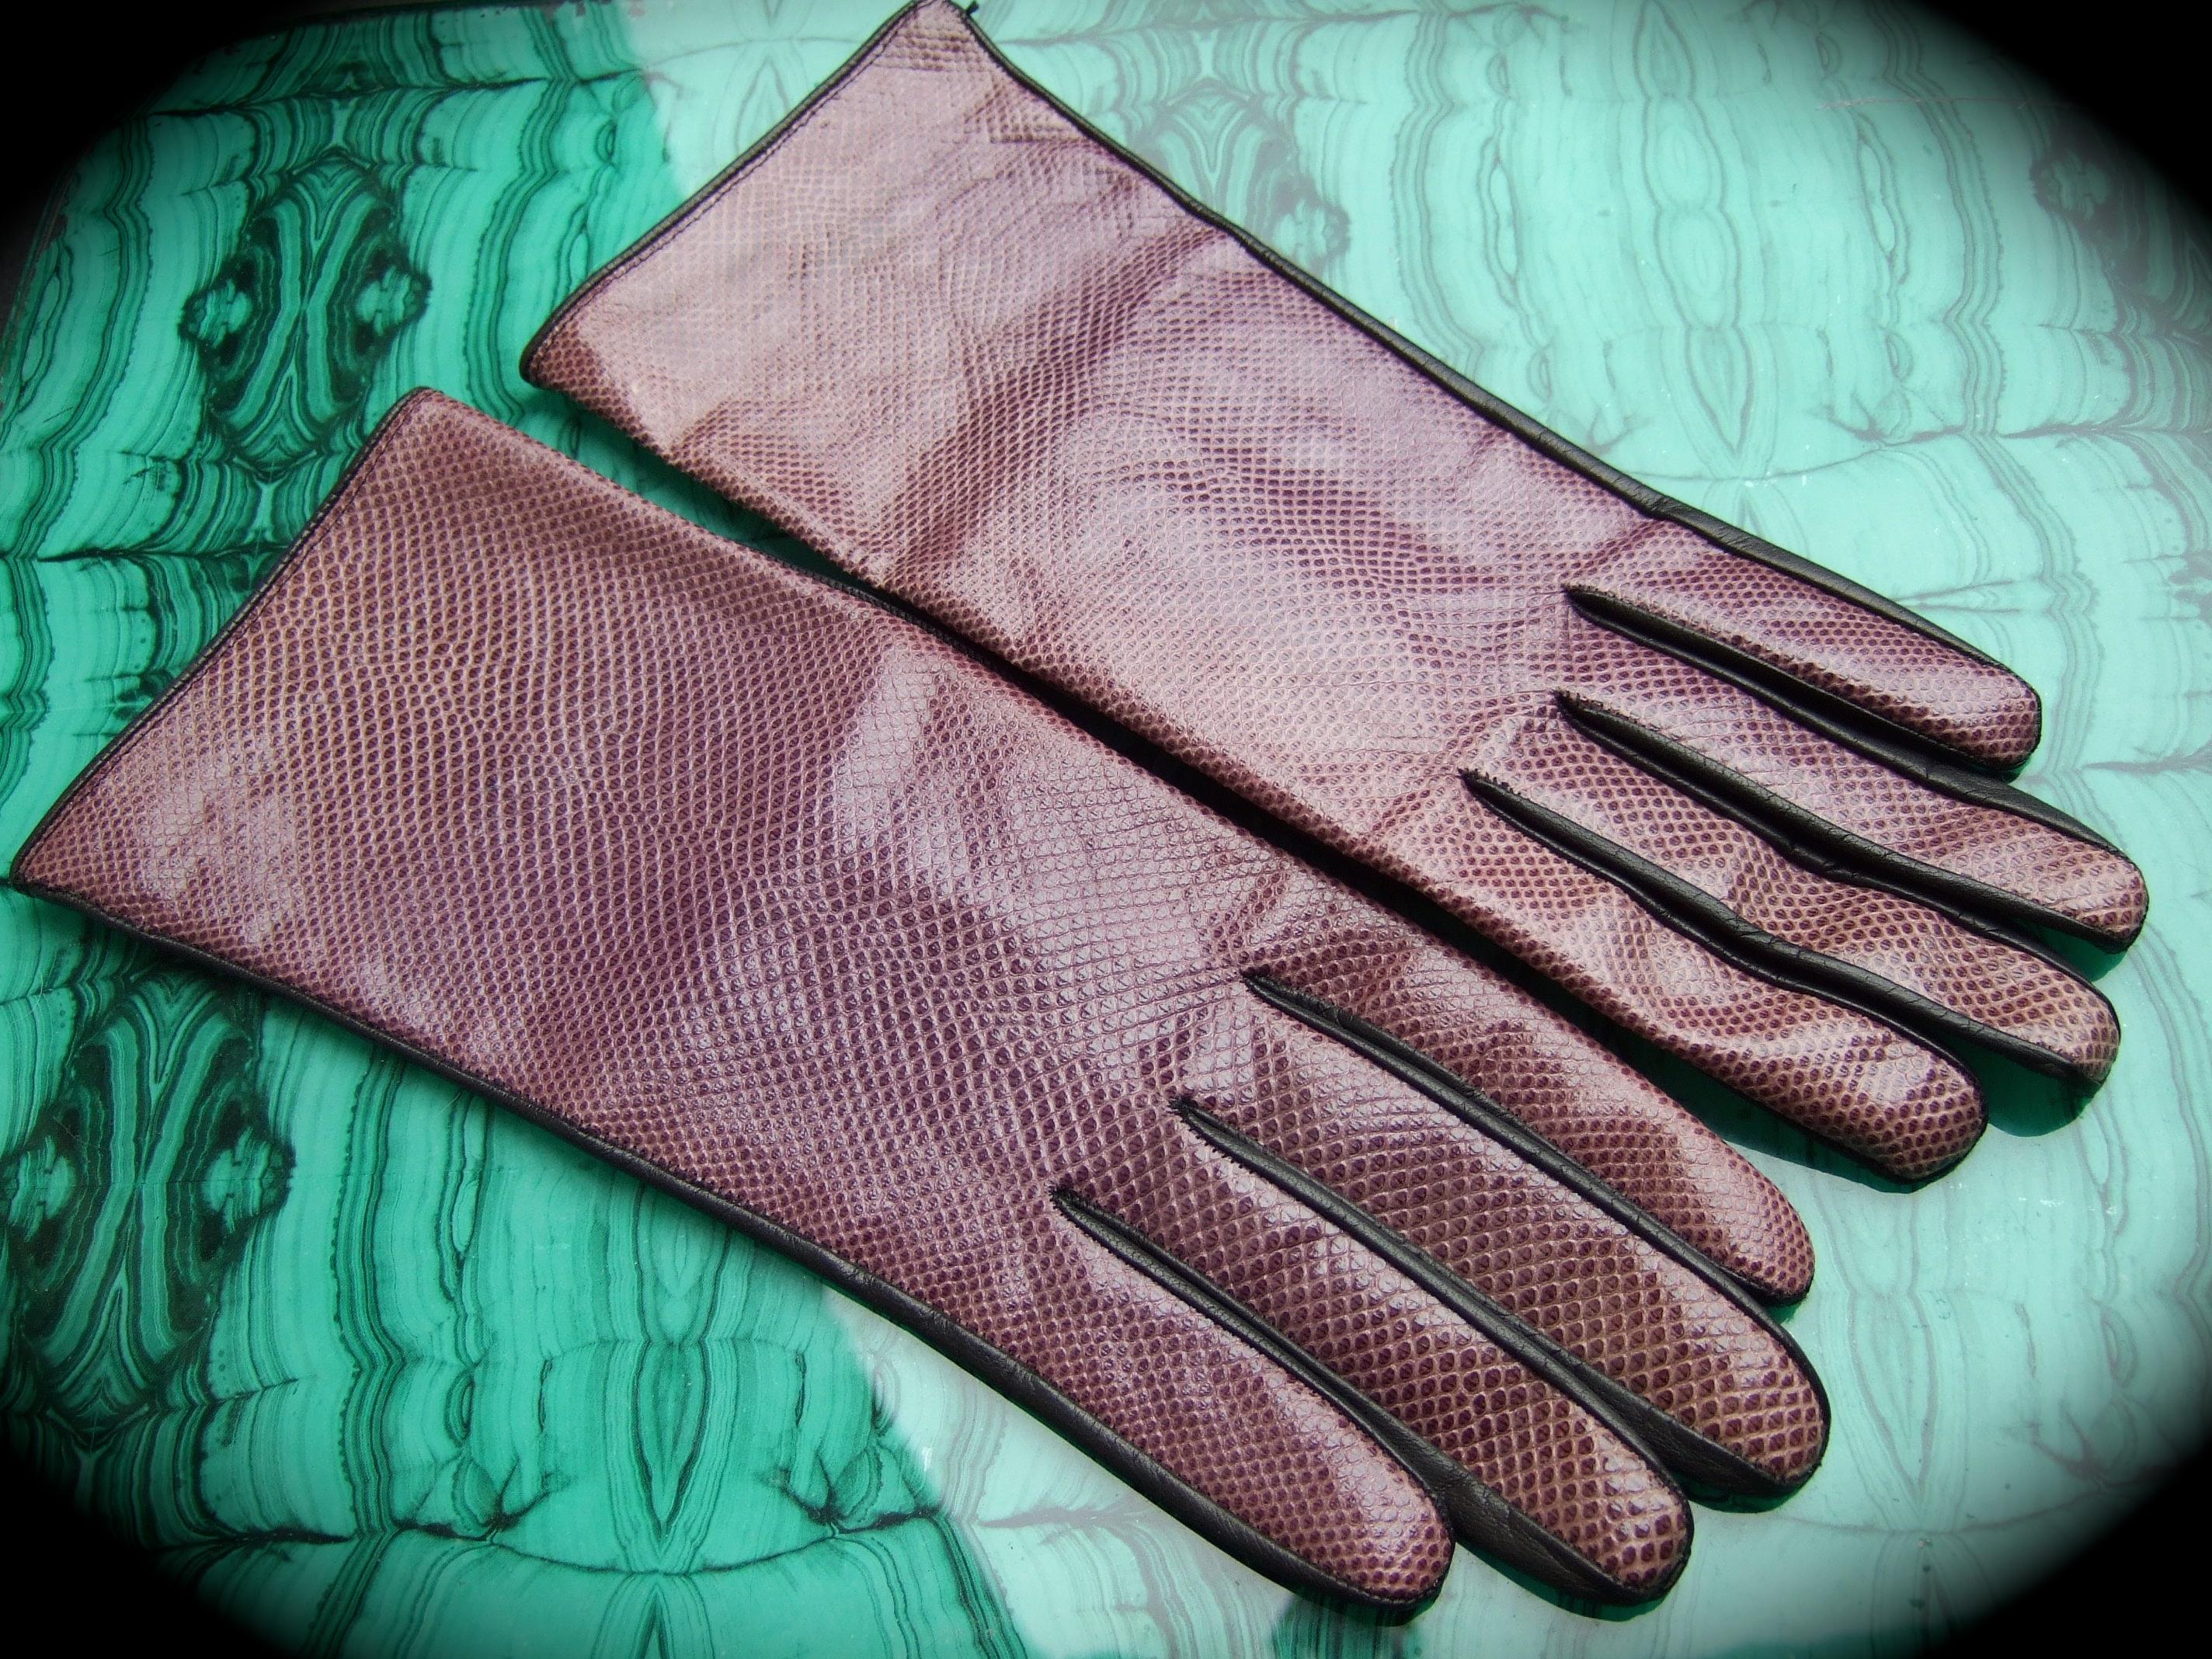 Yves Saint Laurent Chic geprägte lila Lederhandschuhe c 1980s
Die stilvollen Handschuhe sind aus gedämpftem, dunkelviolettem, geprägtem Leder gefertigt, das Reptilienhaut nachempfunden ist

Die äußere Unterseite ist aus schwarzem Glattleder